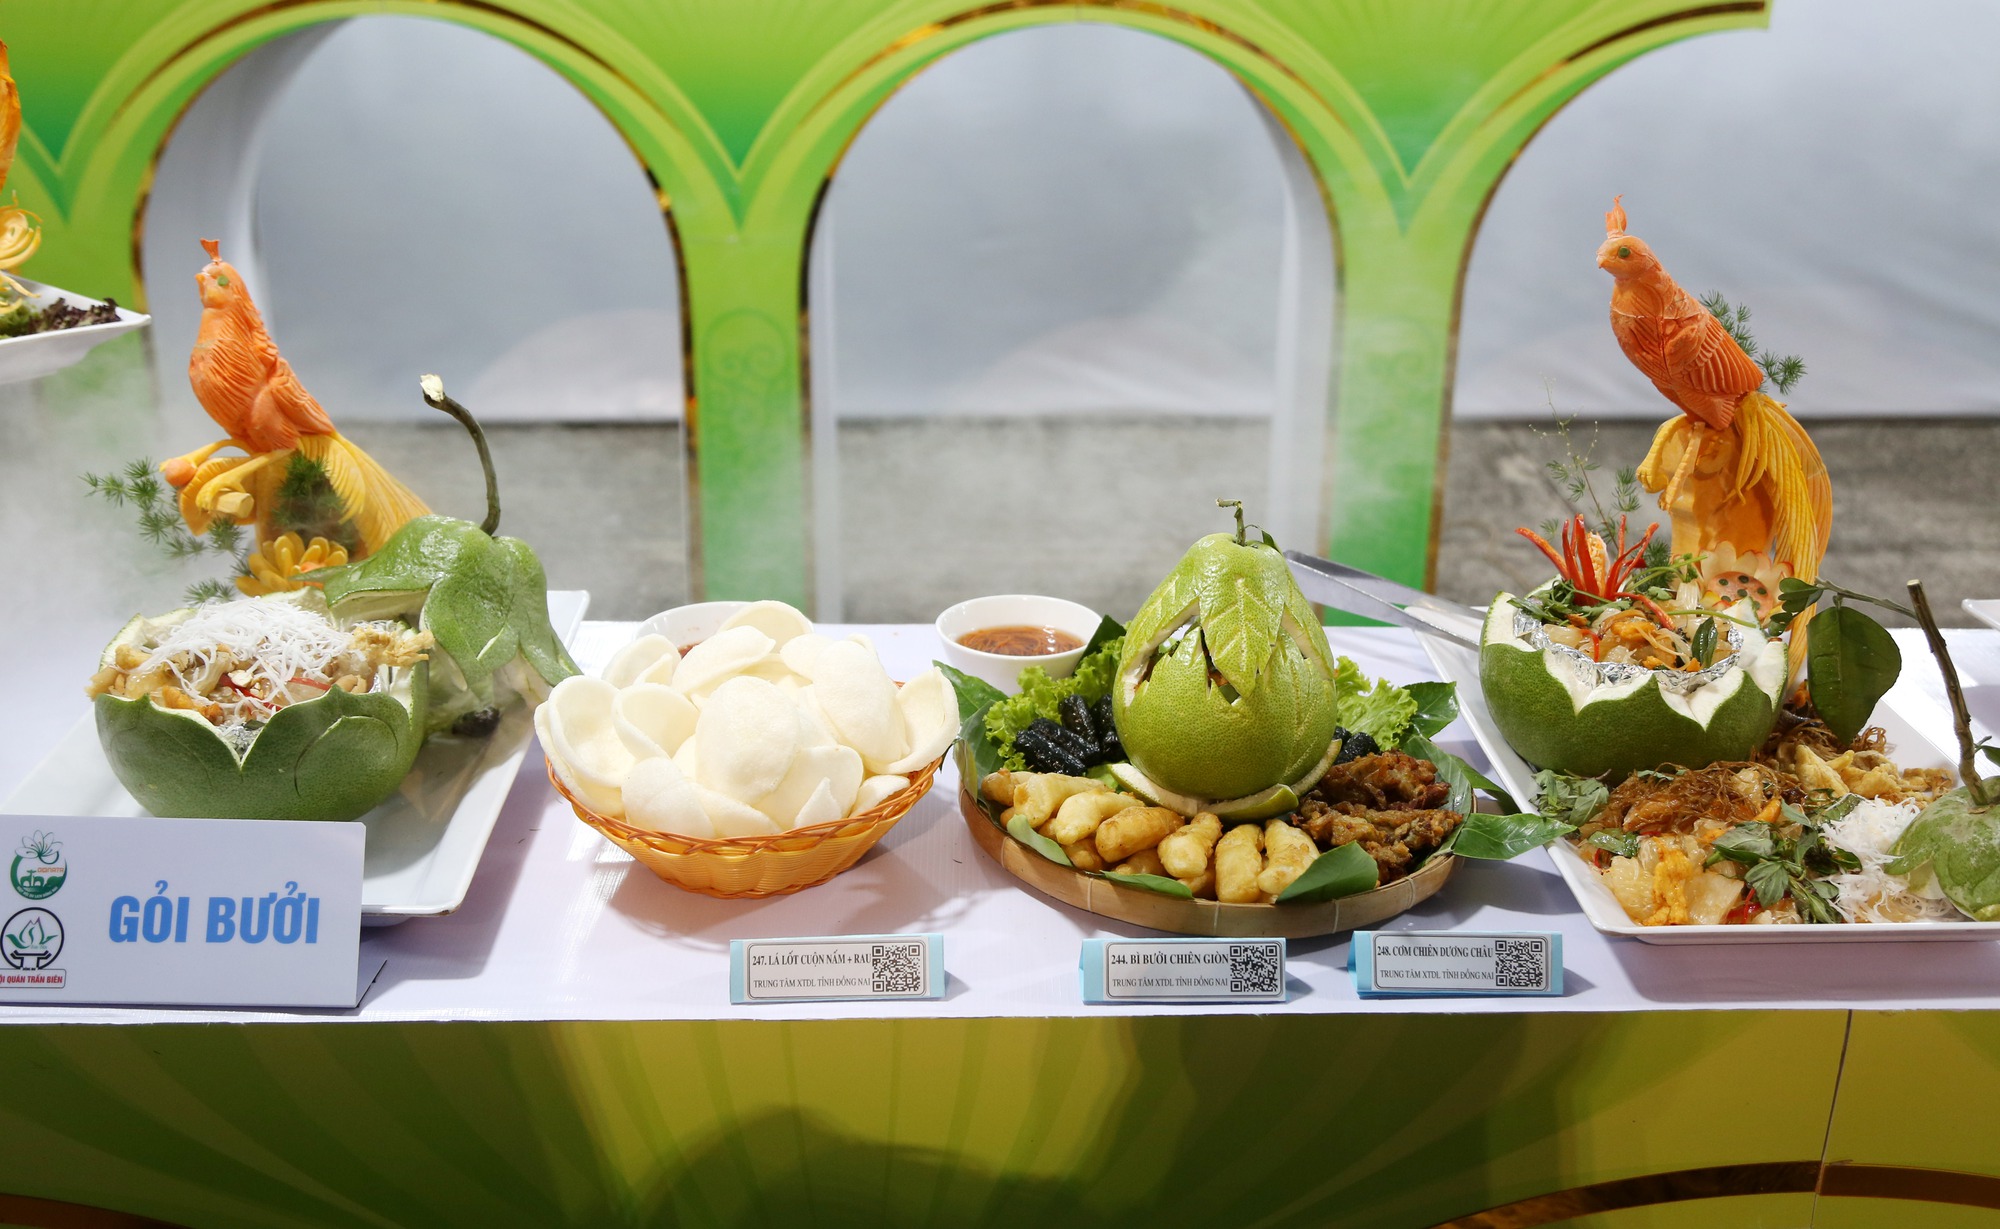 Ngắm vẻ đẹp món chay tại lễ hội nghệ thuật chế biến món ăn chay Tây Ninh - Ảnh 5.